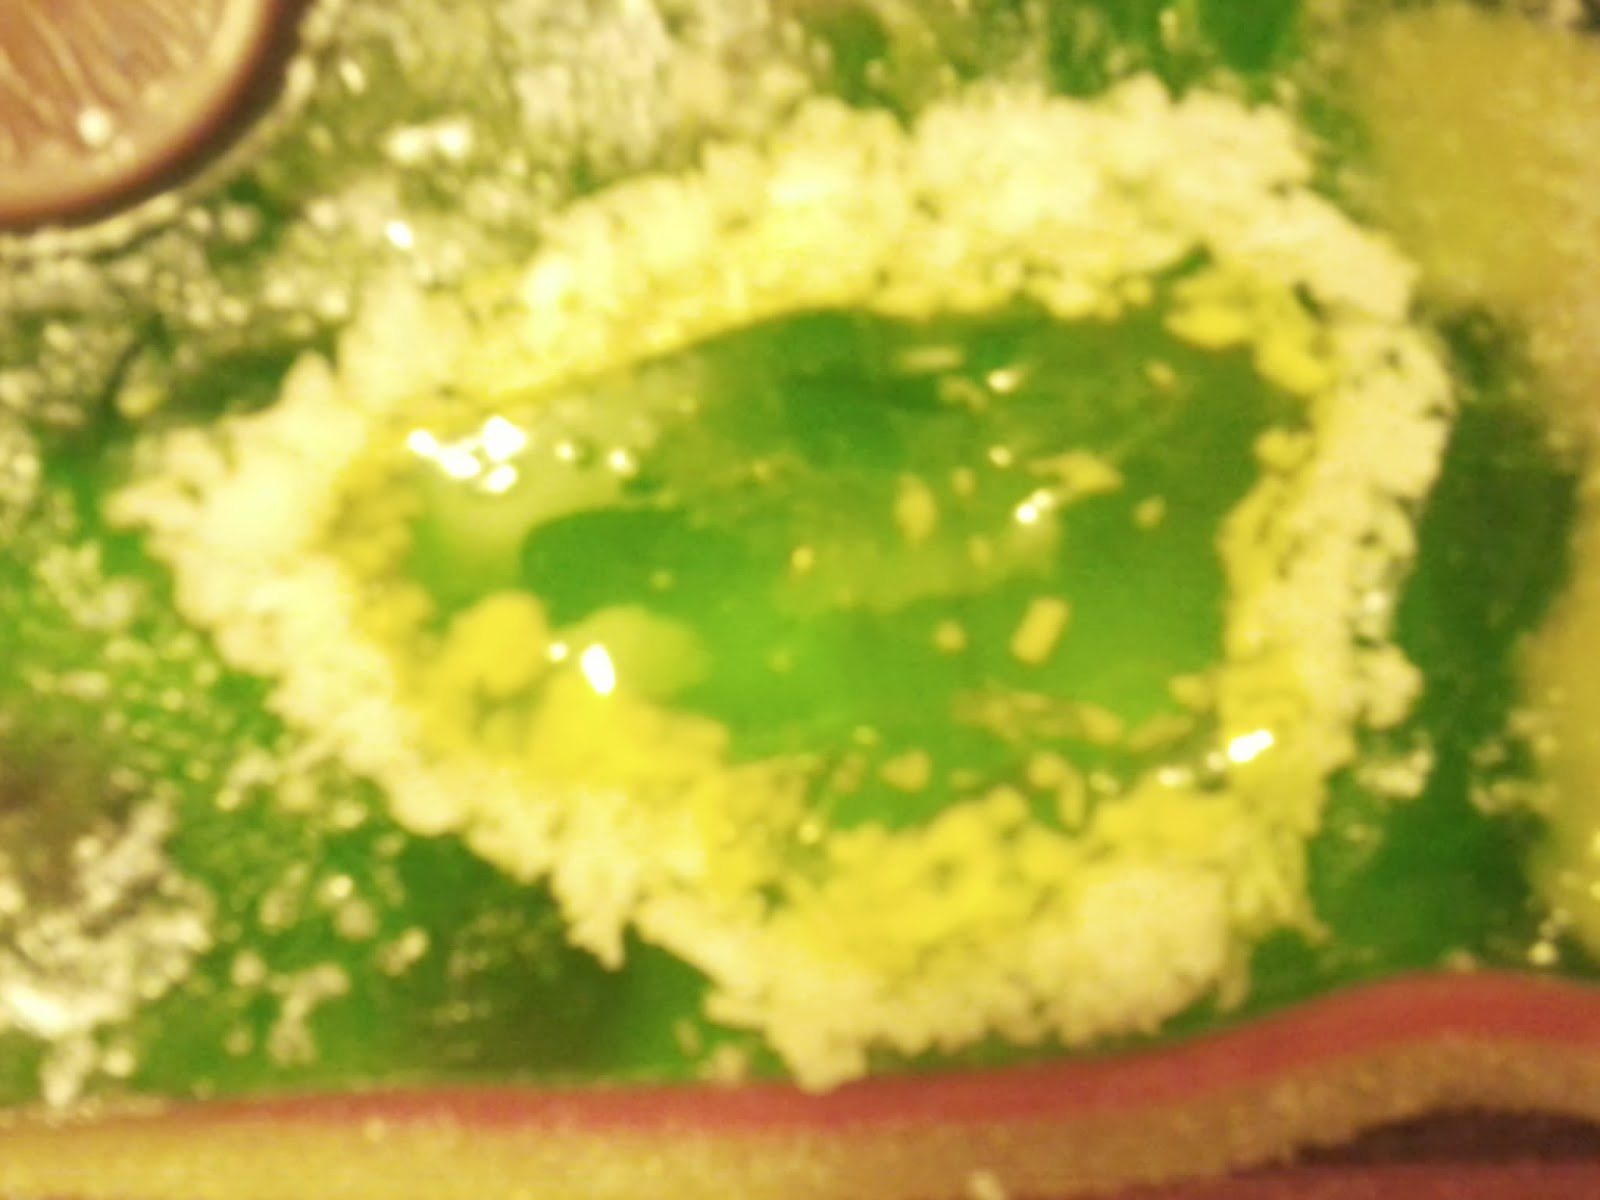 Il vacuolo ¨ stato riprodotto scavando nella gelatina in modo pi¹ profondo e inserendo della gelatina gialla ai cui bordi abbiamo inserito del cocco